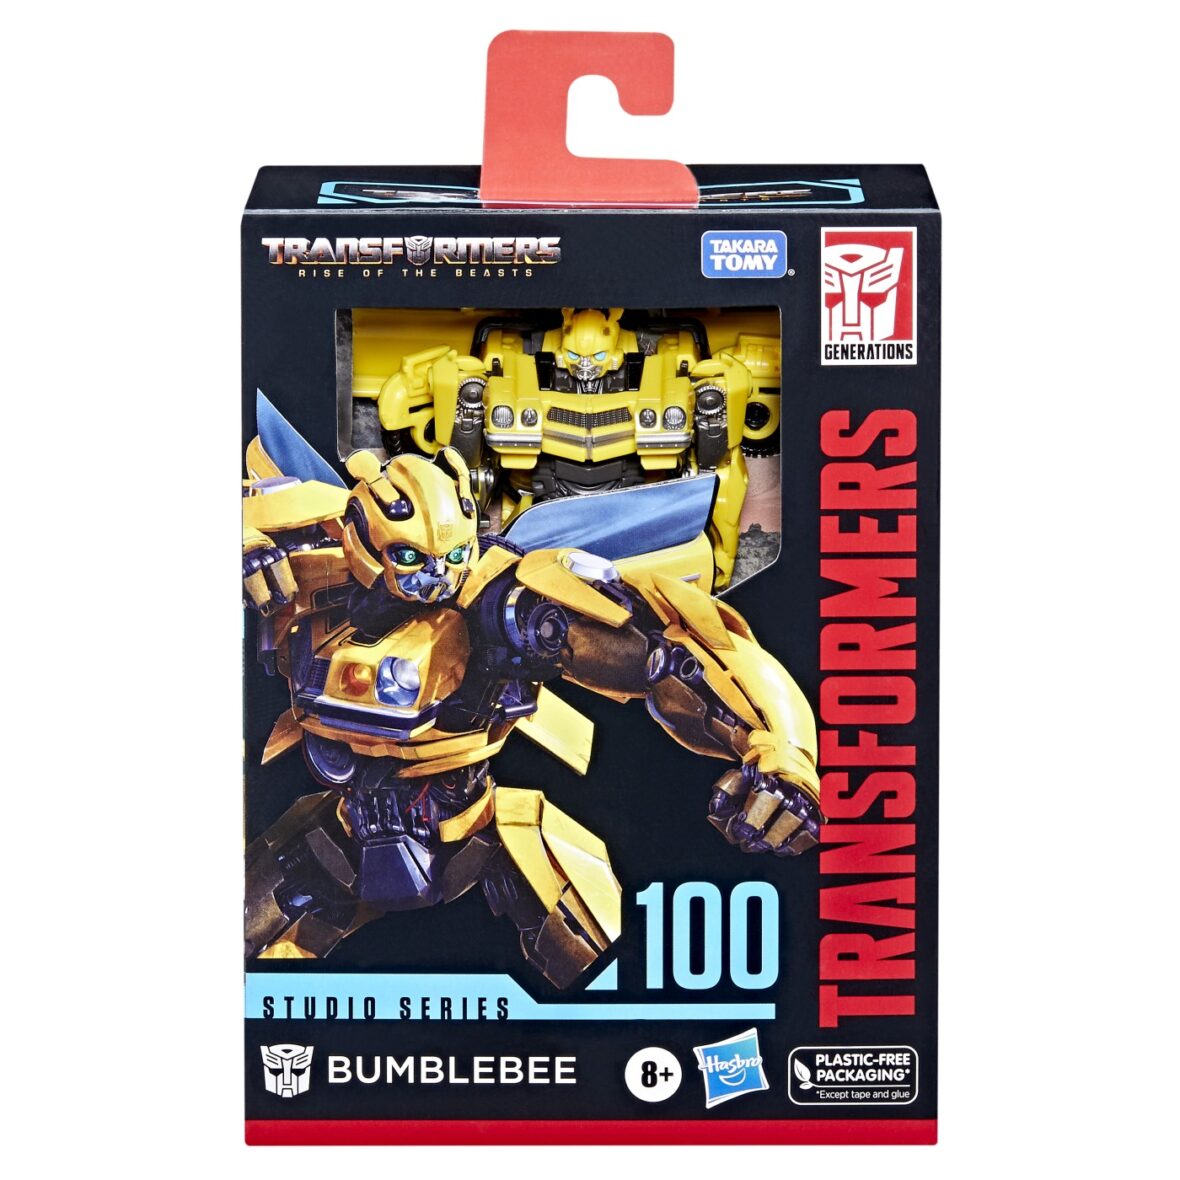 Transformers Robot Deluxe Bumblebee